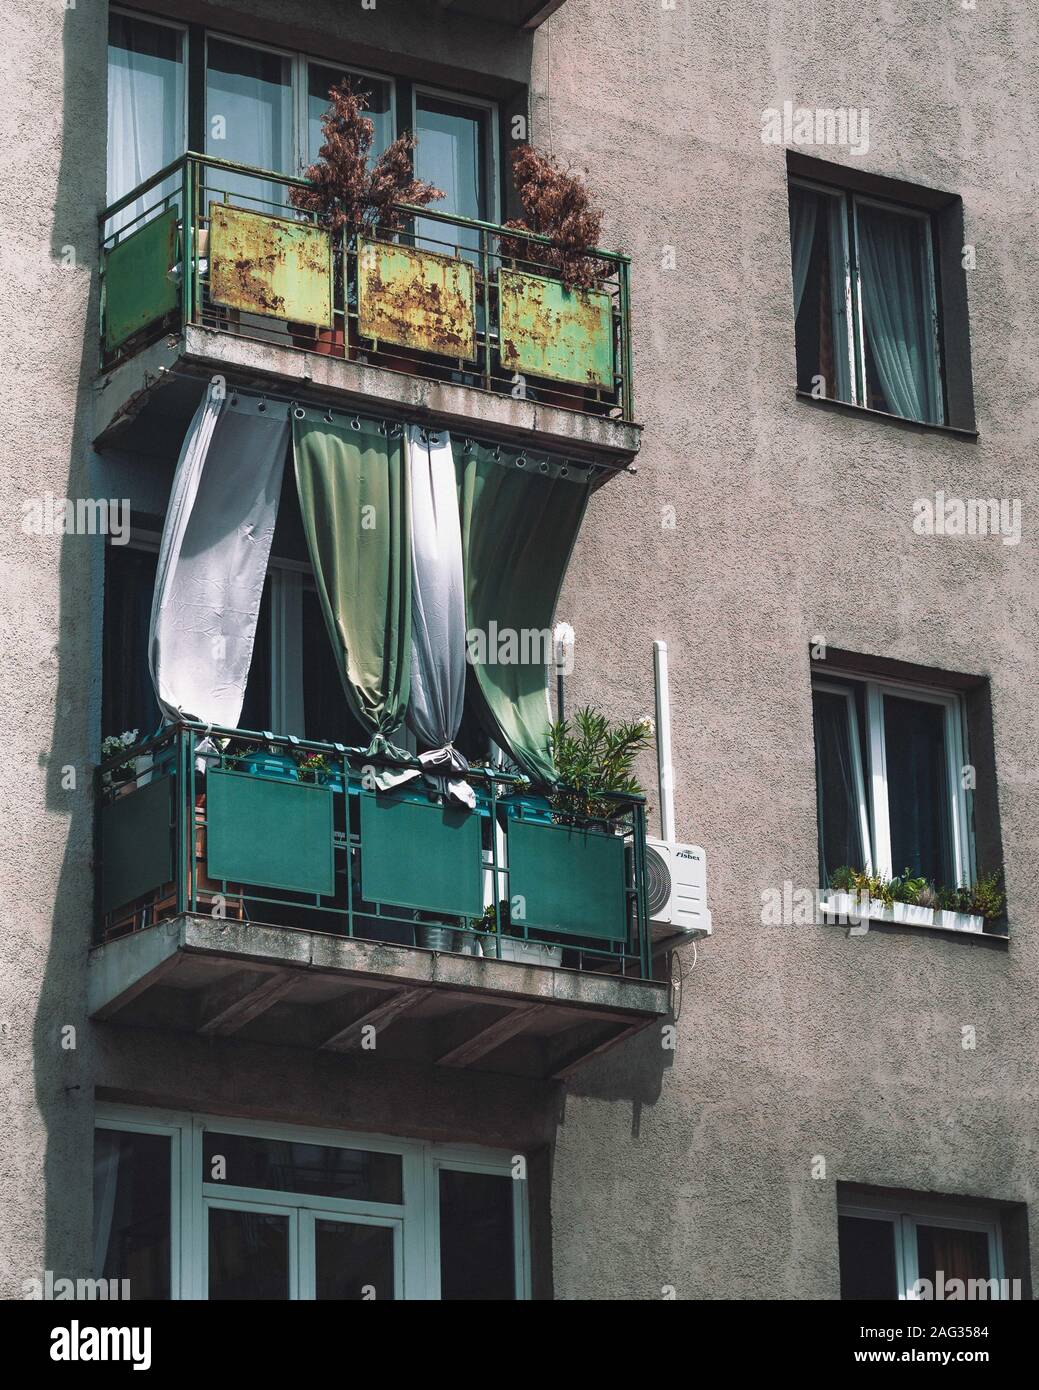 Balkone mit fließenden Vorhängen und verschiedenen Pflanzen, die die Fenster  bedecken Stockfotografie - Alamy